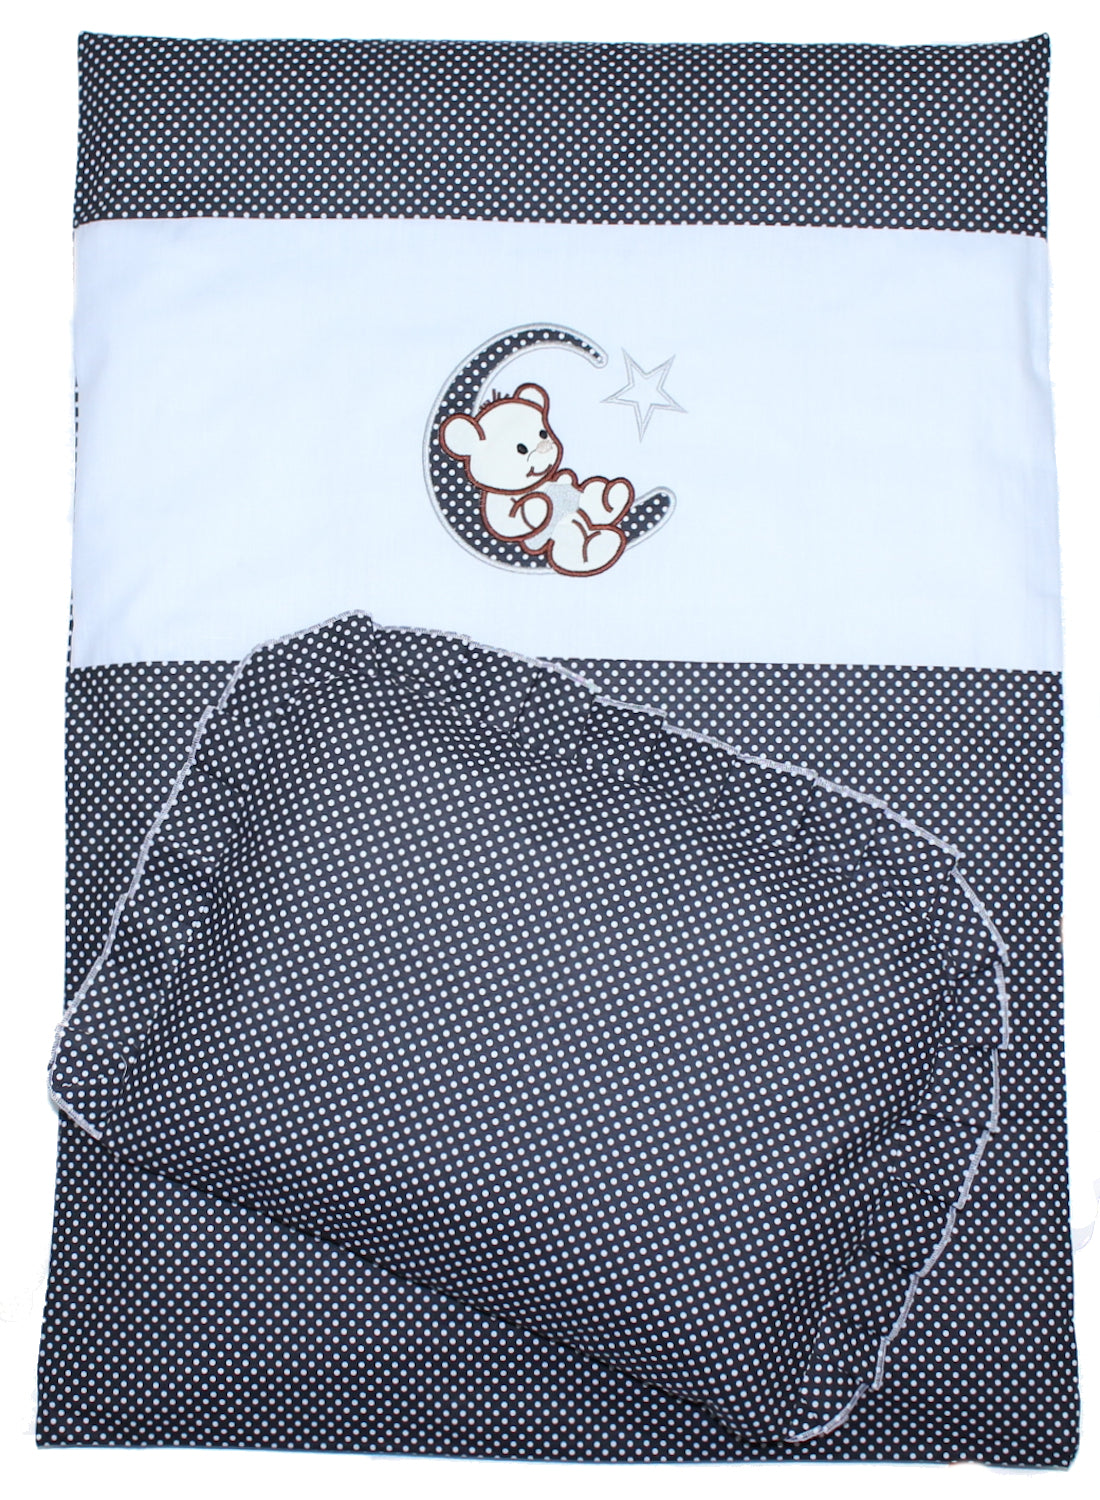 2- 4tlg Kinderwagenset - Bärchen Mond - Punkten Schwarz - Bettwäsche für Kinderwagen Bezüge Decke Kissen